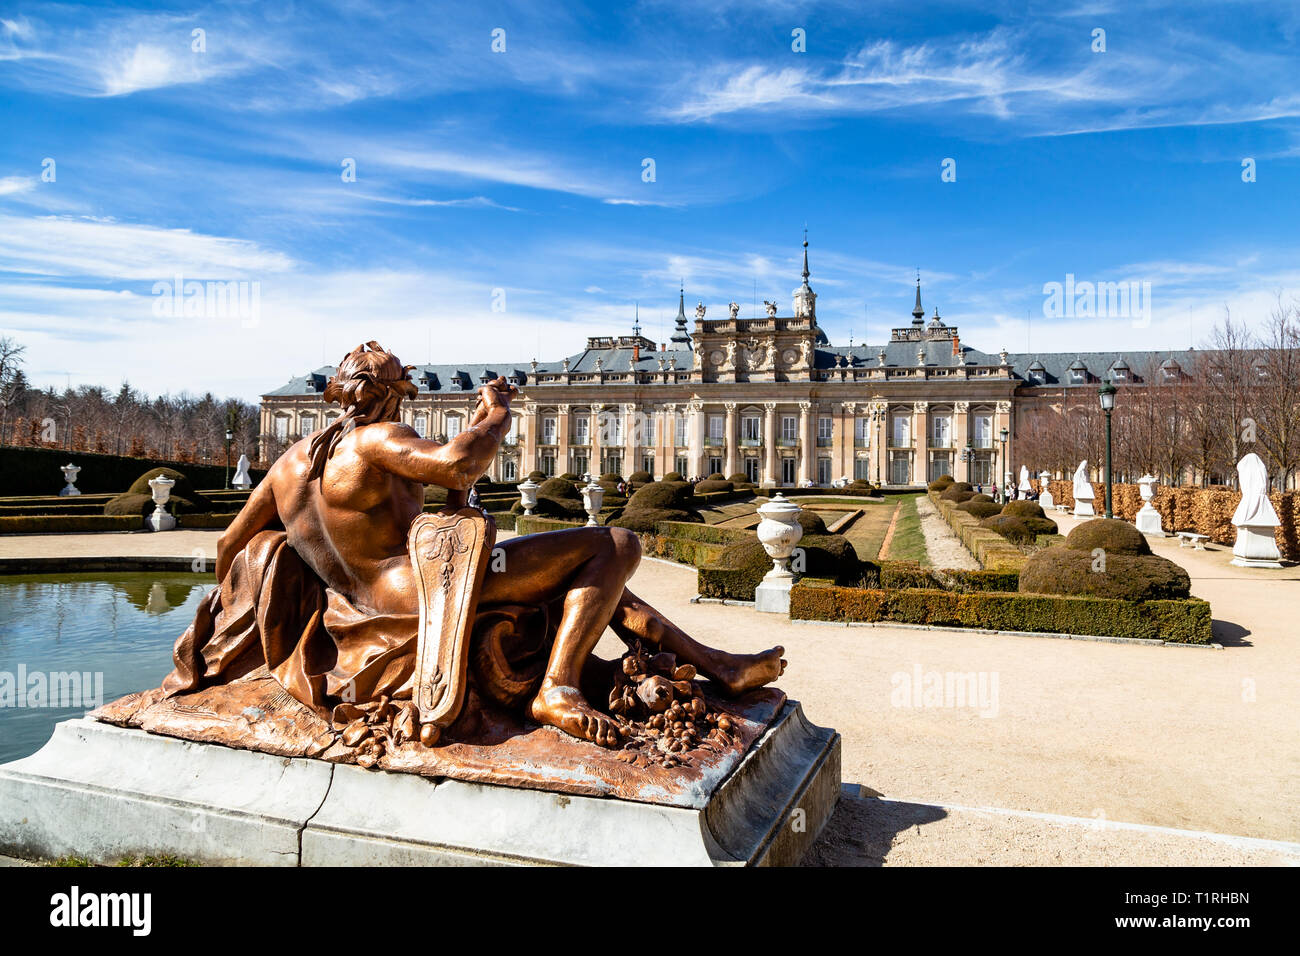 Mar 2019 - La Granja de San Ildefonso, Segovia, Espagne - Fuente de Anfitrite dans les jardins du palais royal en hiver. Le Palais Royal et son gar Banque D'Images